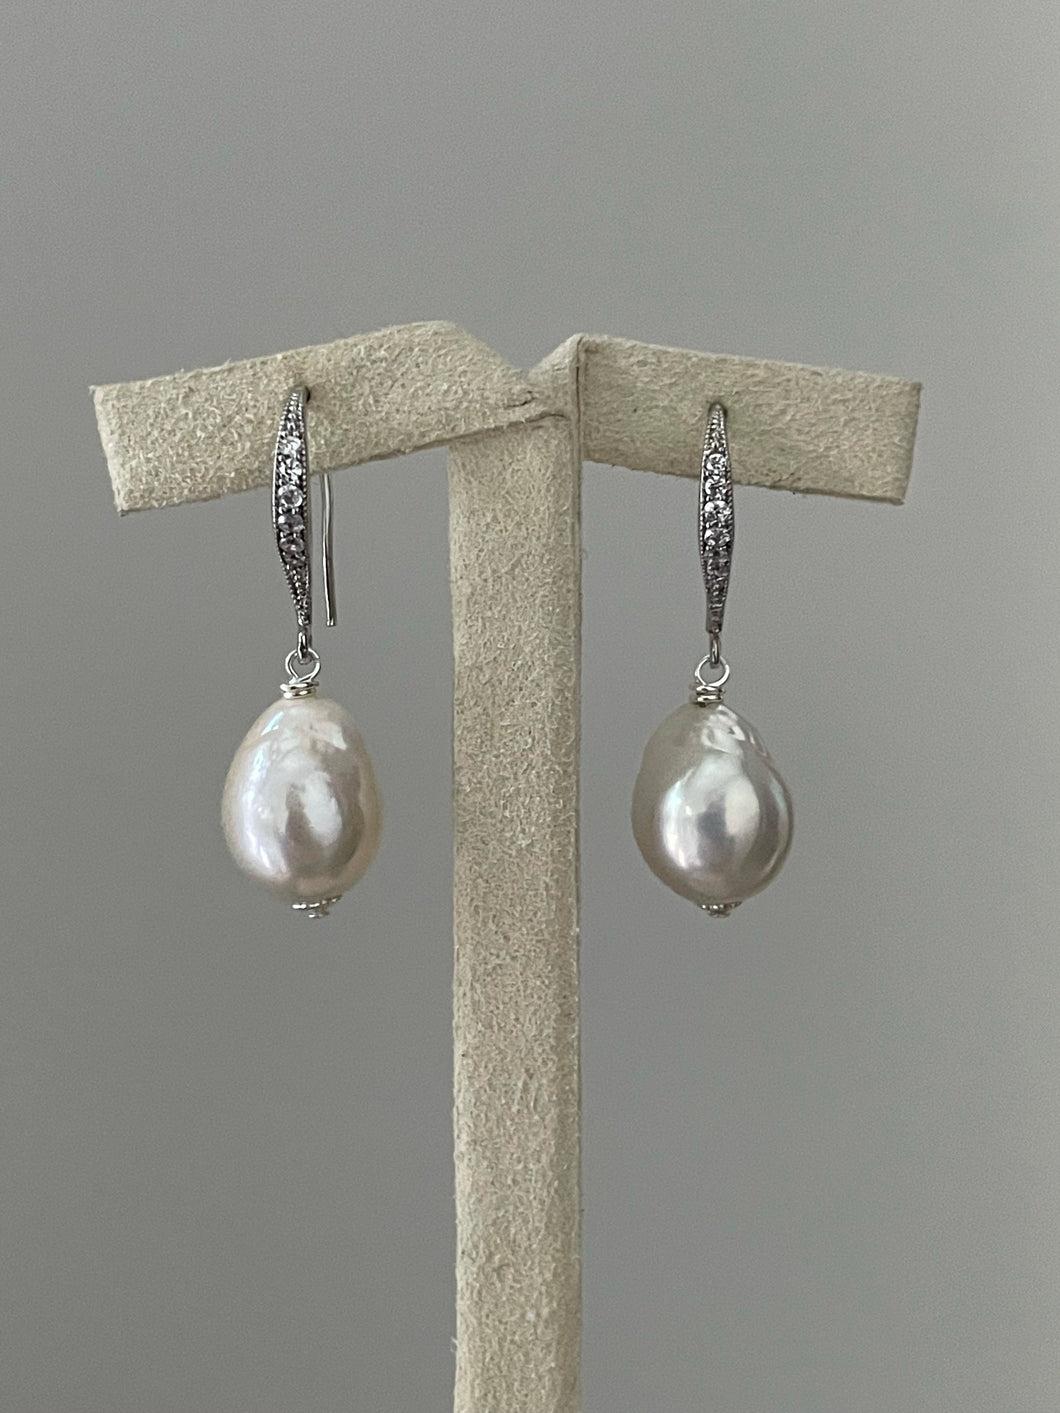 Drop Ivory Pearls on Rhodium Hooks